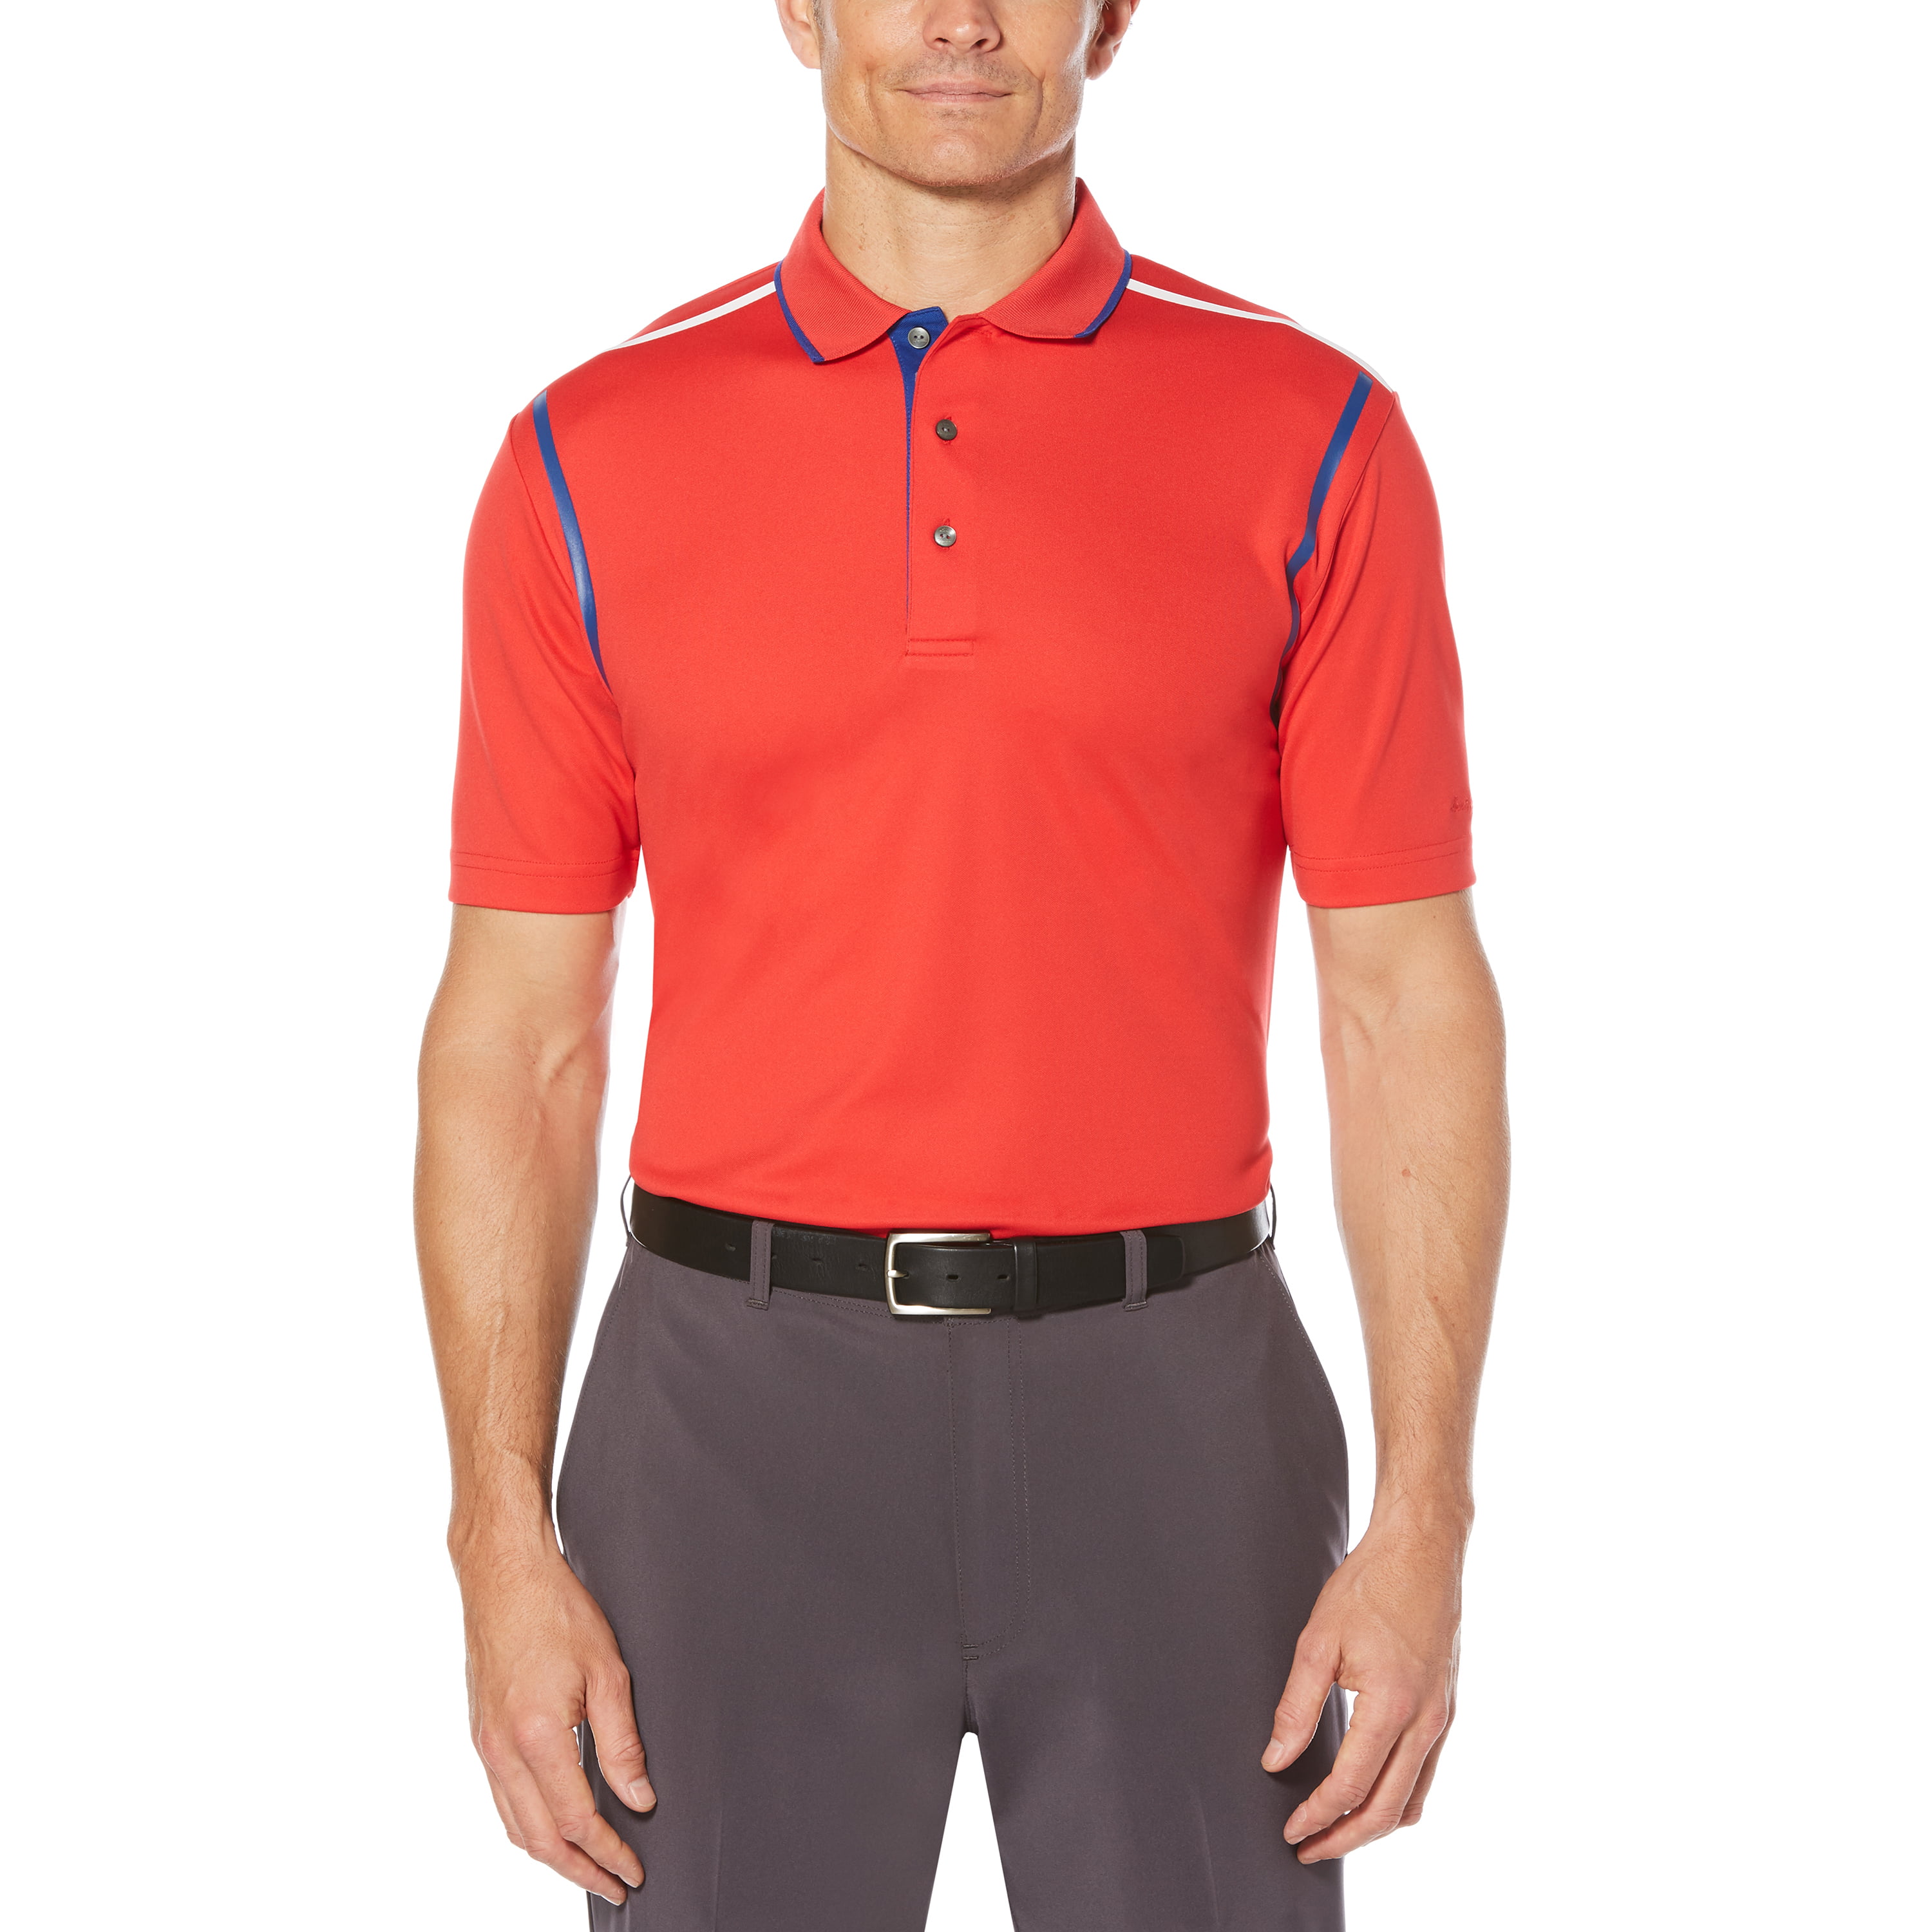 Ben Hogan - Ben Hogan Men's Performance Short Sleeve Golf Polo Shirt ...